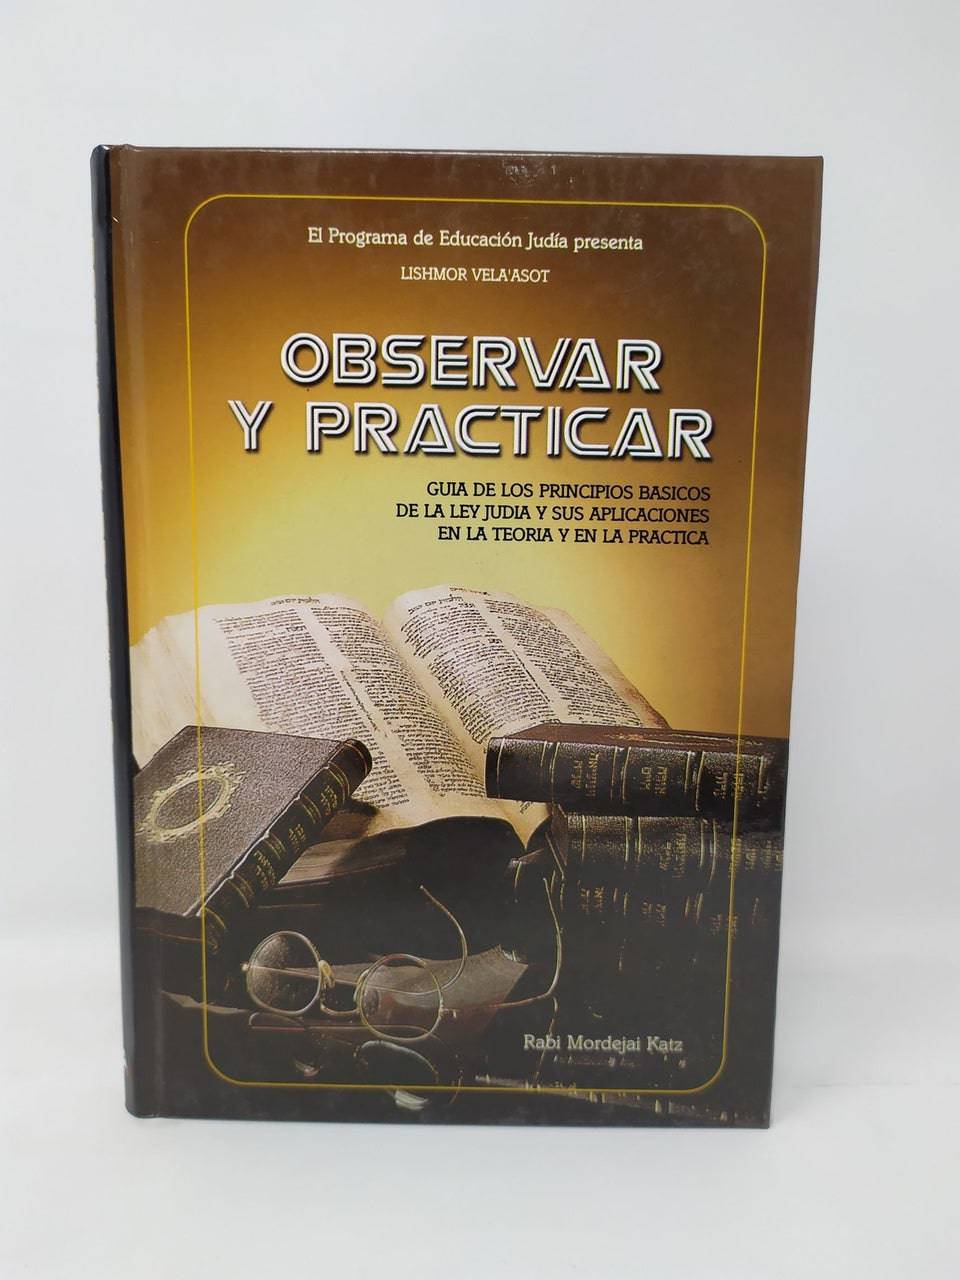 Observar Y Practicar (Guia Principios Basicos De La Ley Judia) - Libreria Jerusalem Centro